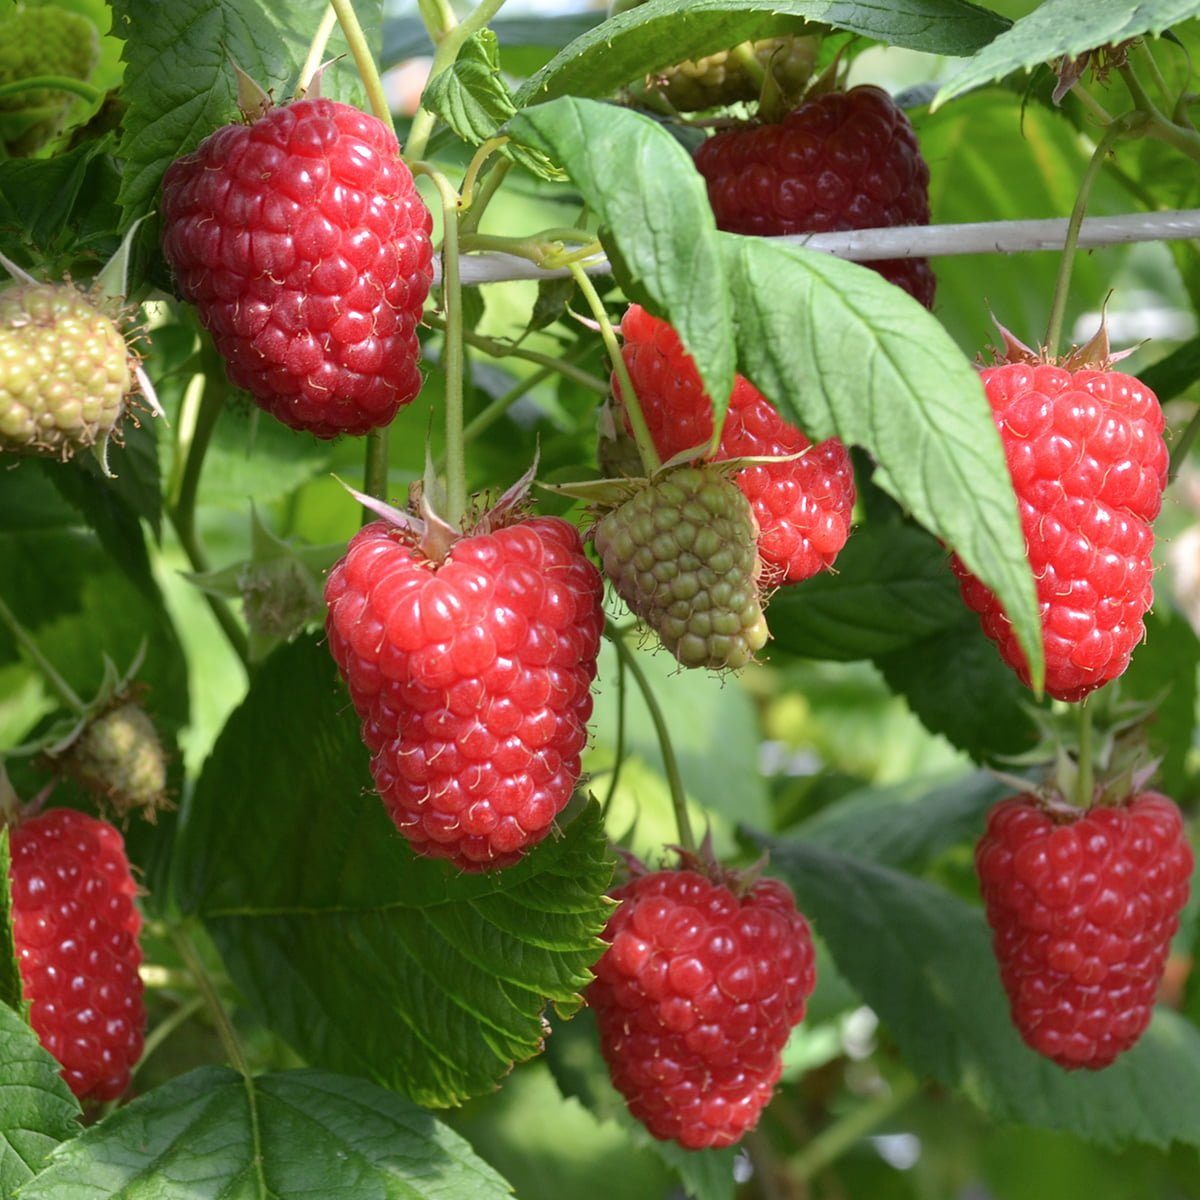 Raspberry Enrosadira fruits